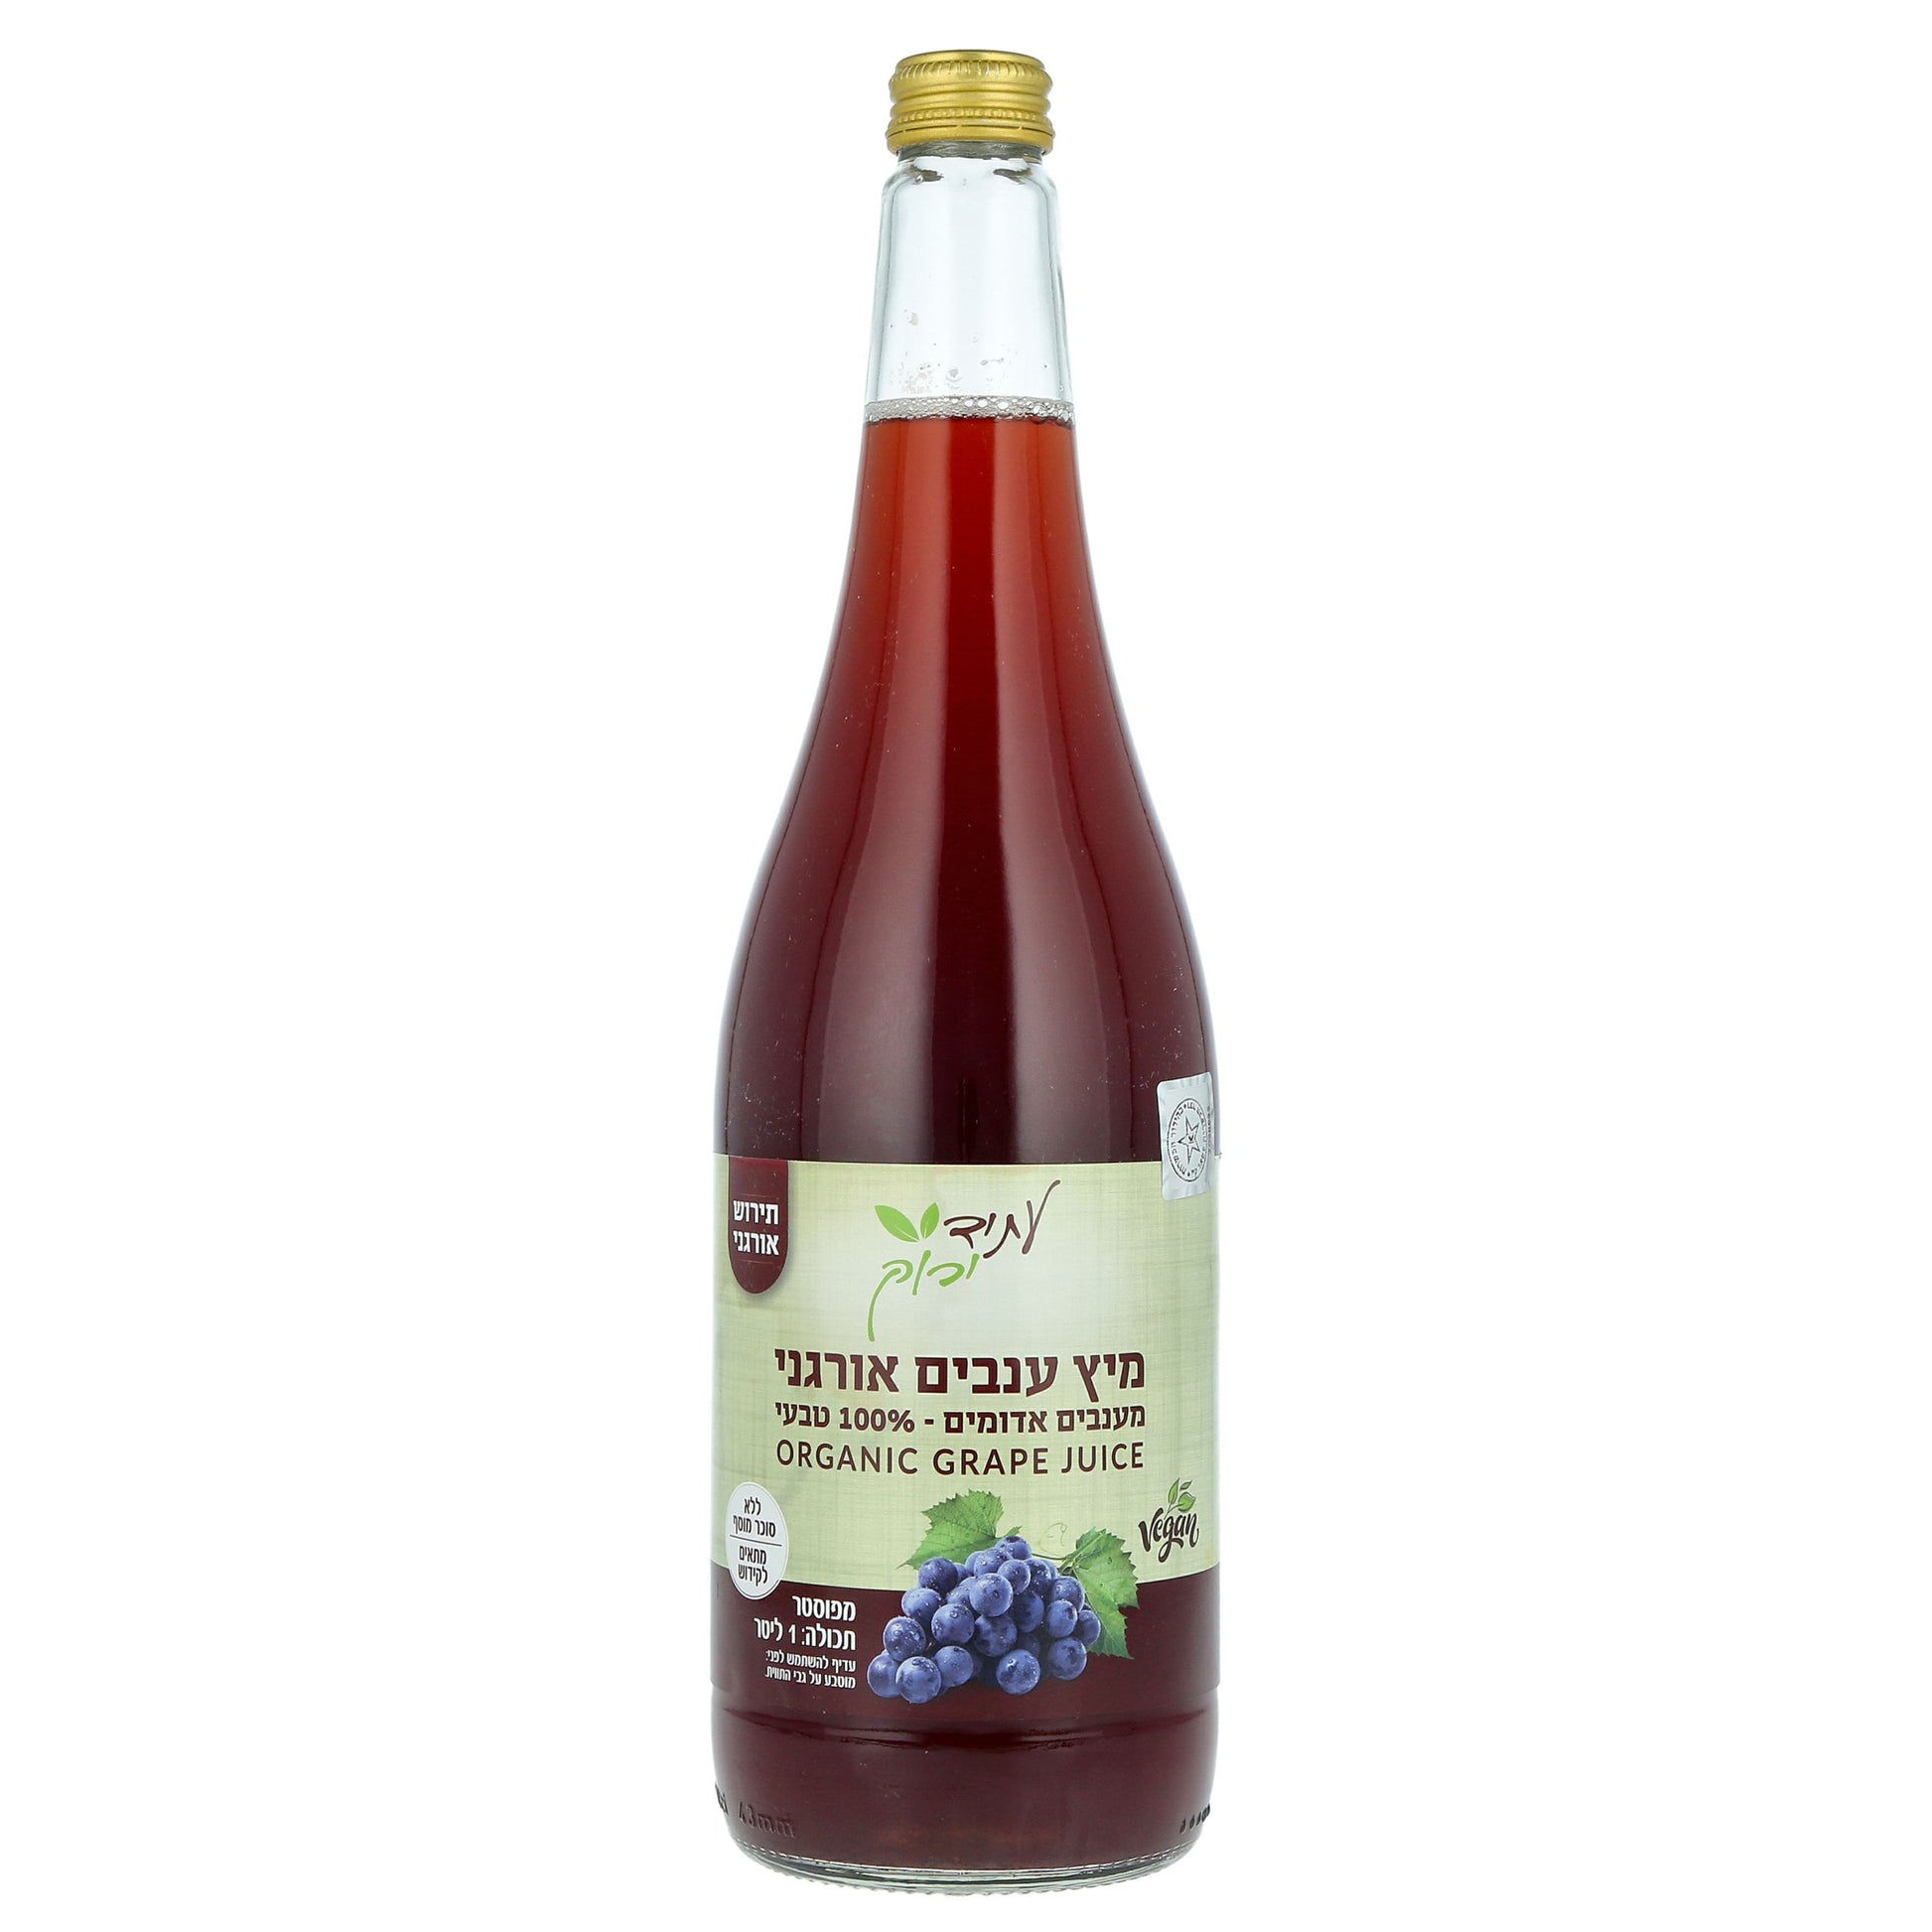 מיץ ענבים אורגני תירוש - עתיד ירוק - פריקפוא